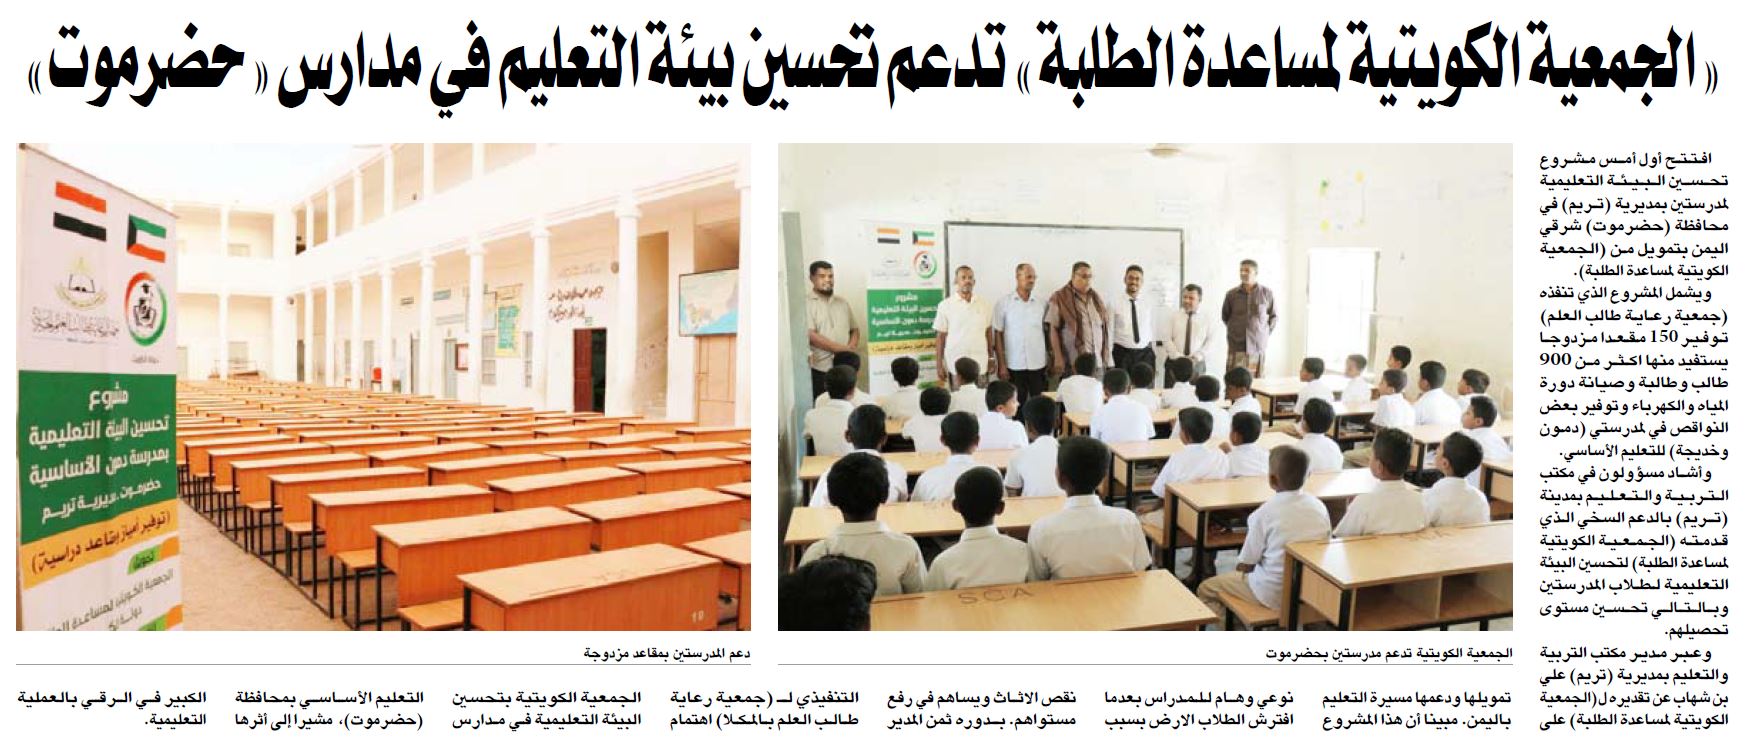 الجمعية الكويتية لمساعدة الطلبة تدعم تحسين بيئة التعليم في حضرموت